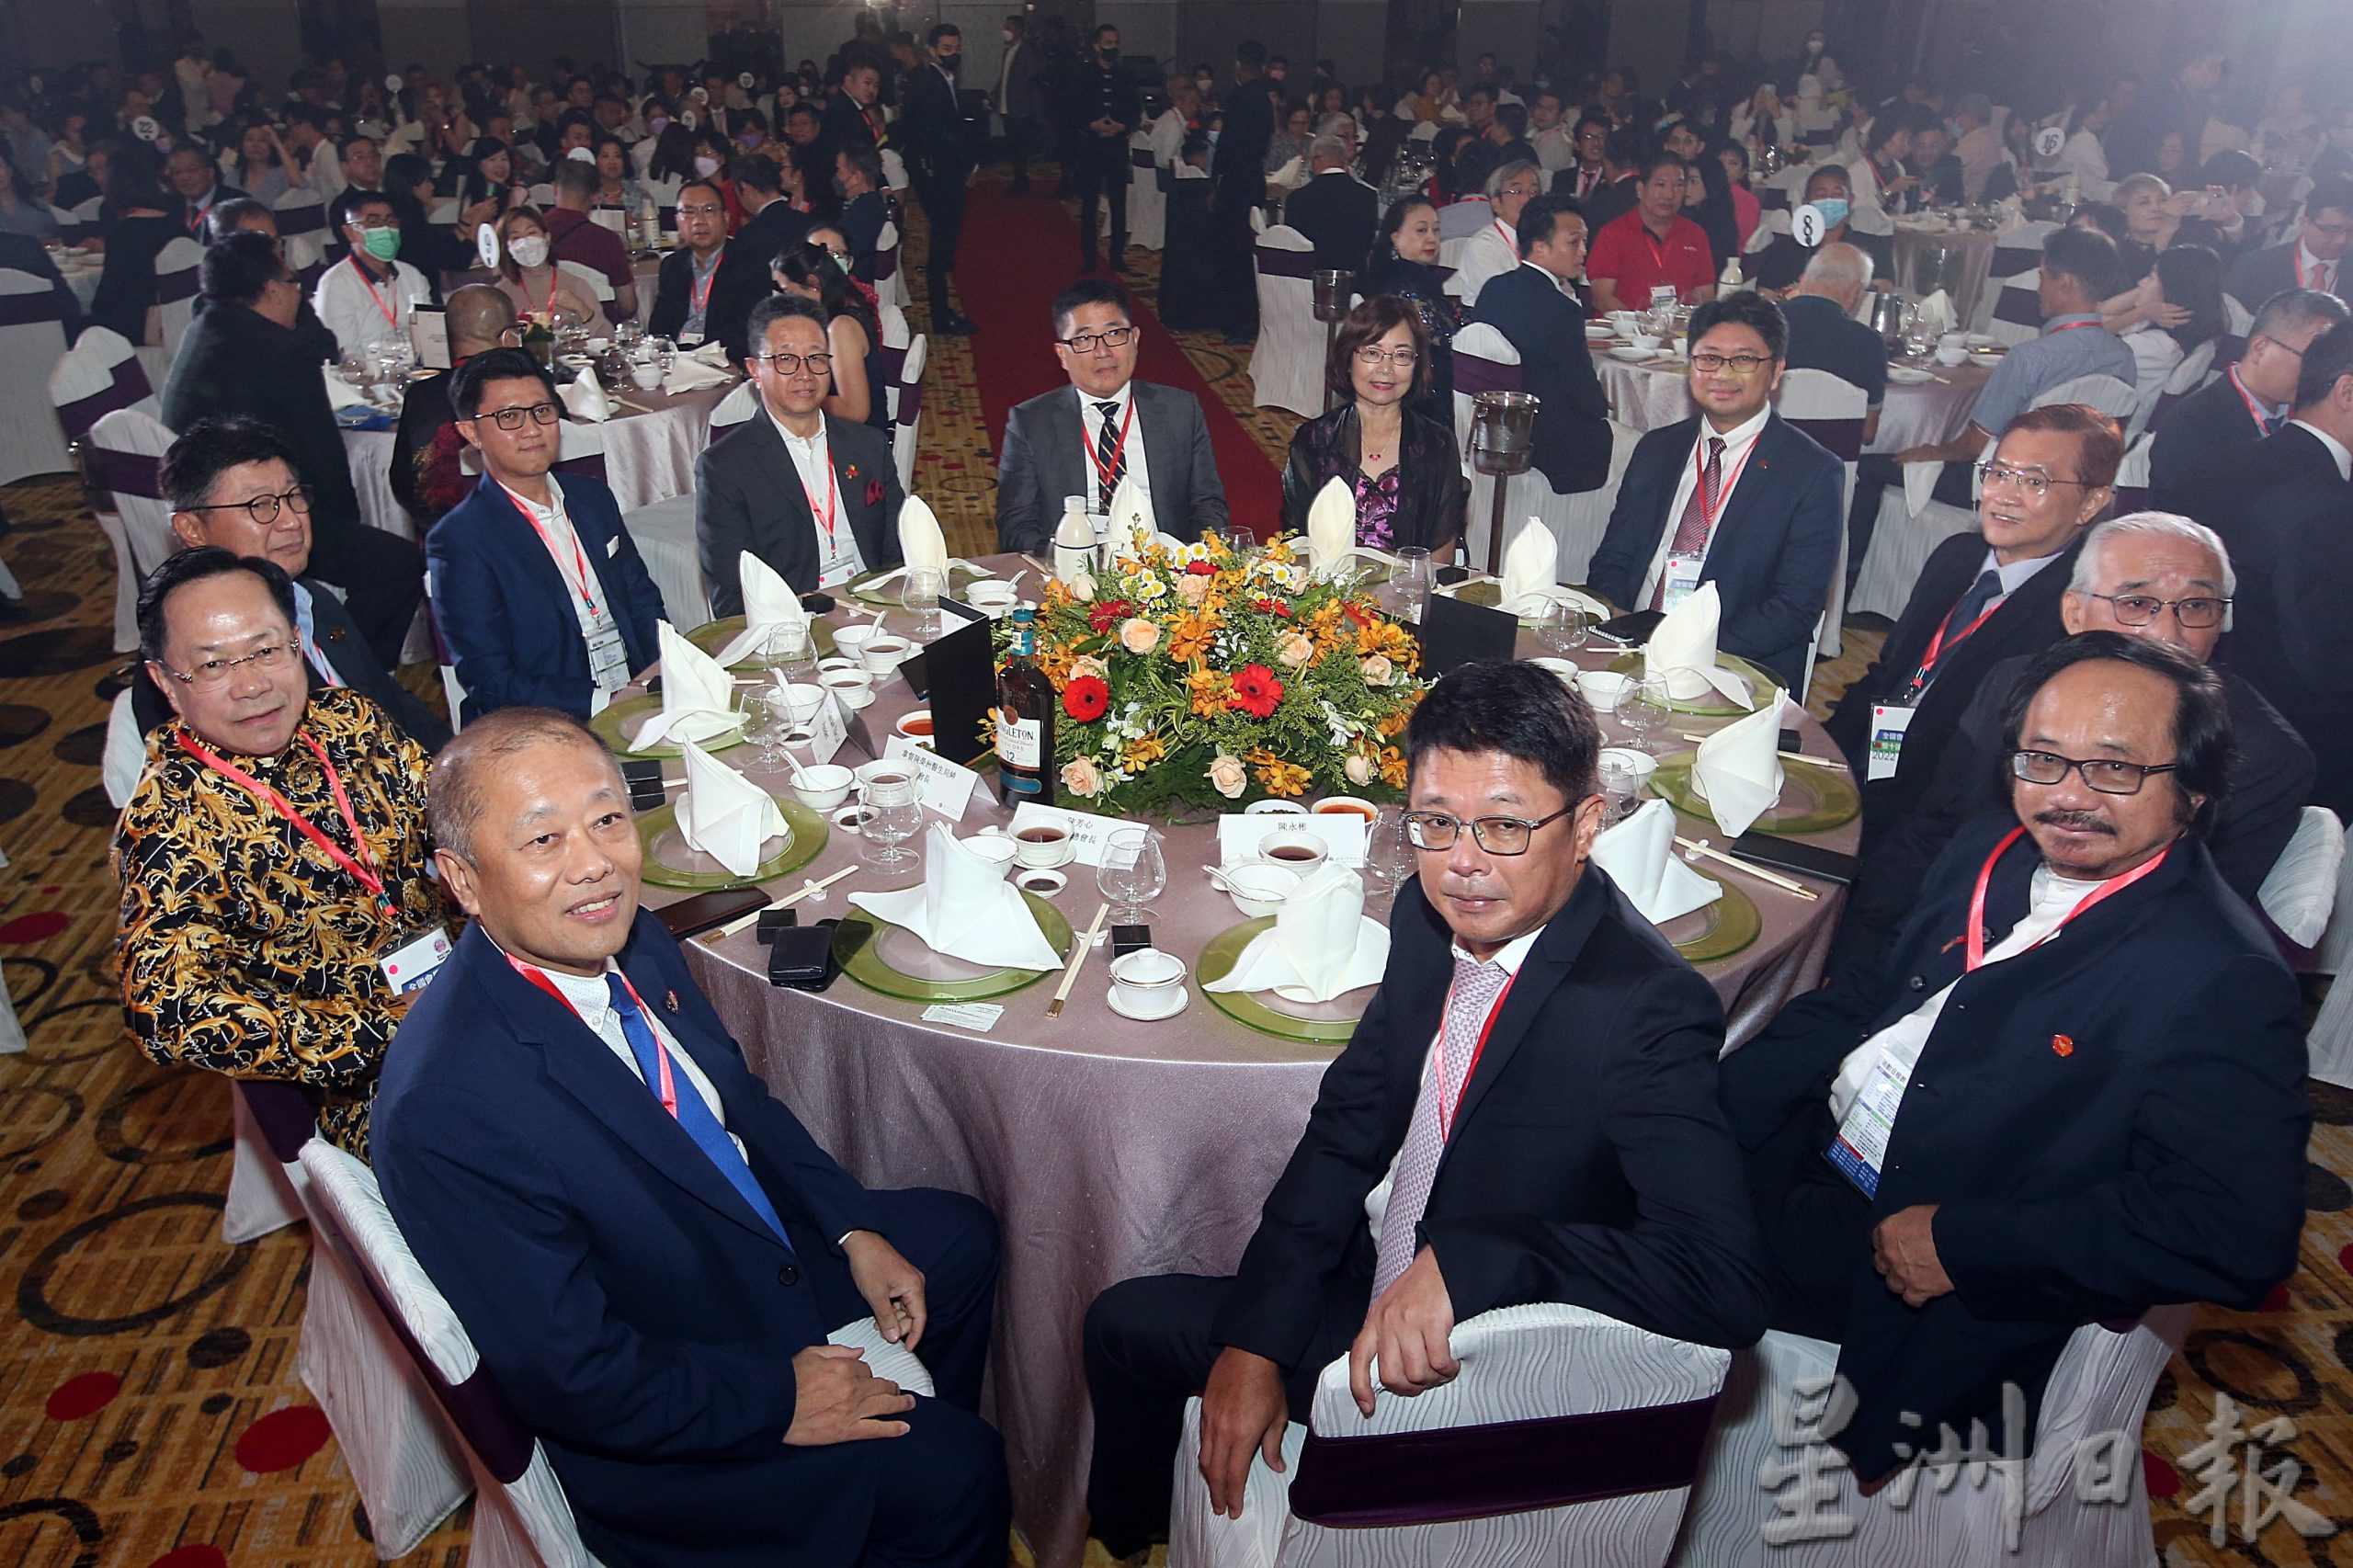 马来西亚台湾商会联合总会32周年庆 